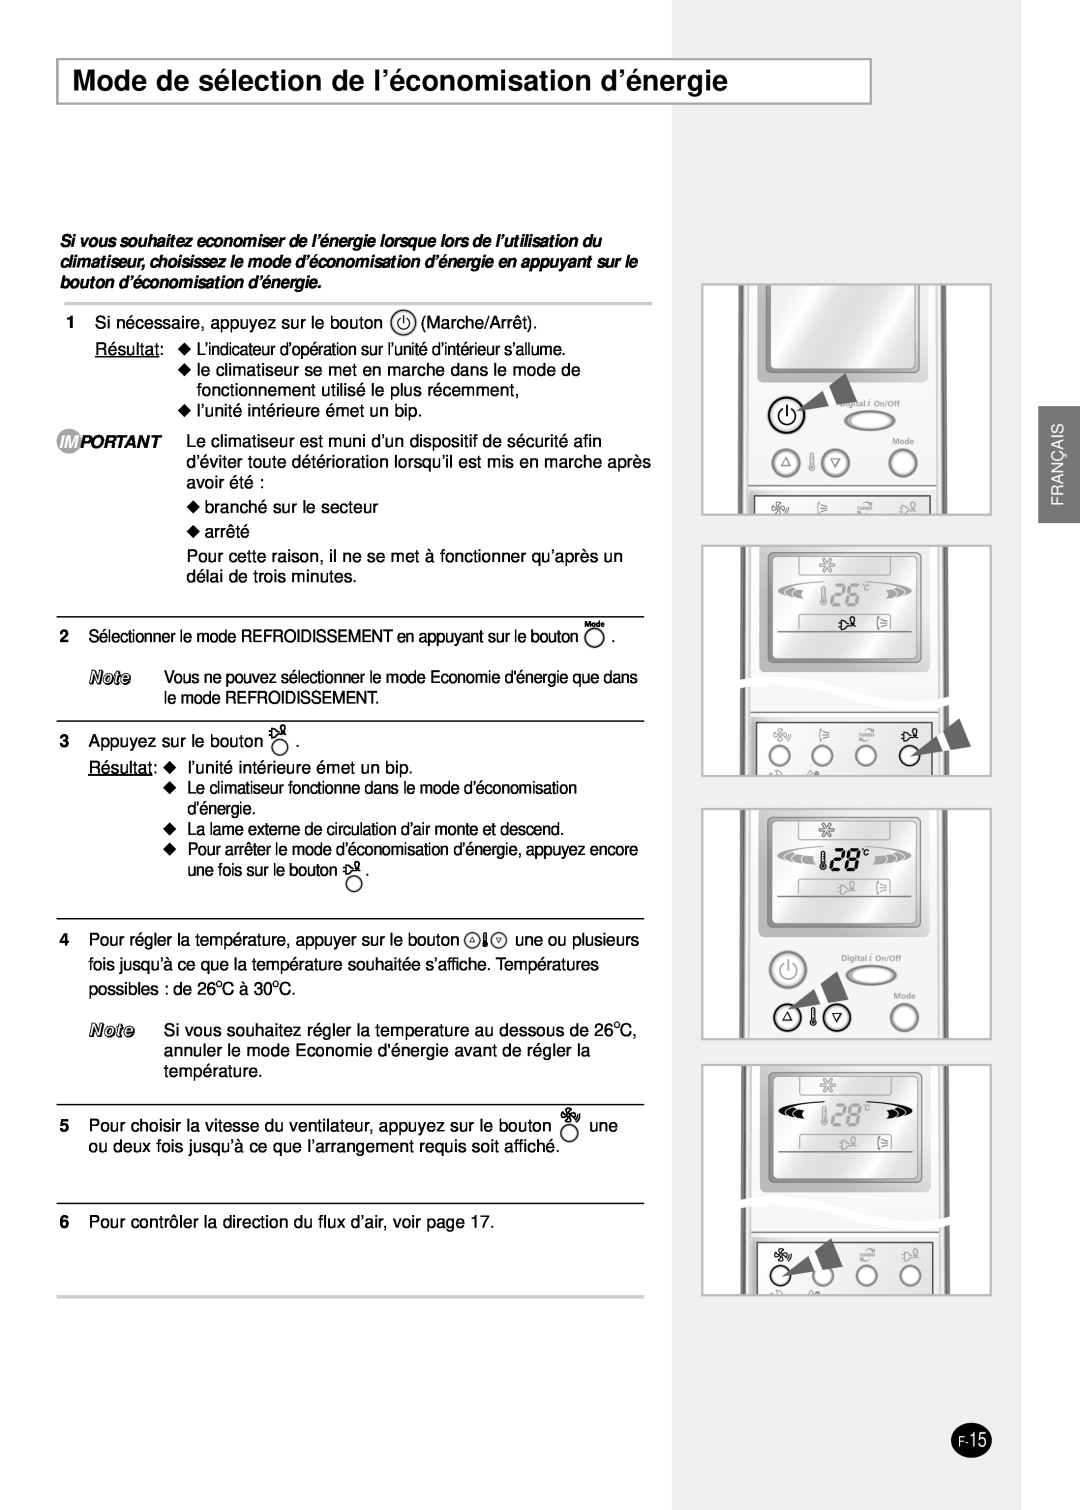 Samsung SH24TP6 manual Mode de sélection de l’économisation d’énergie, Français, F-15 